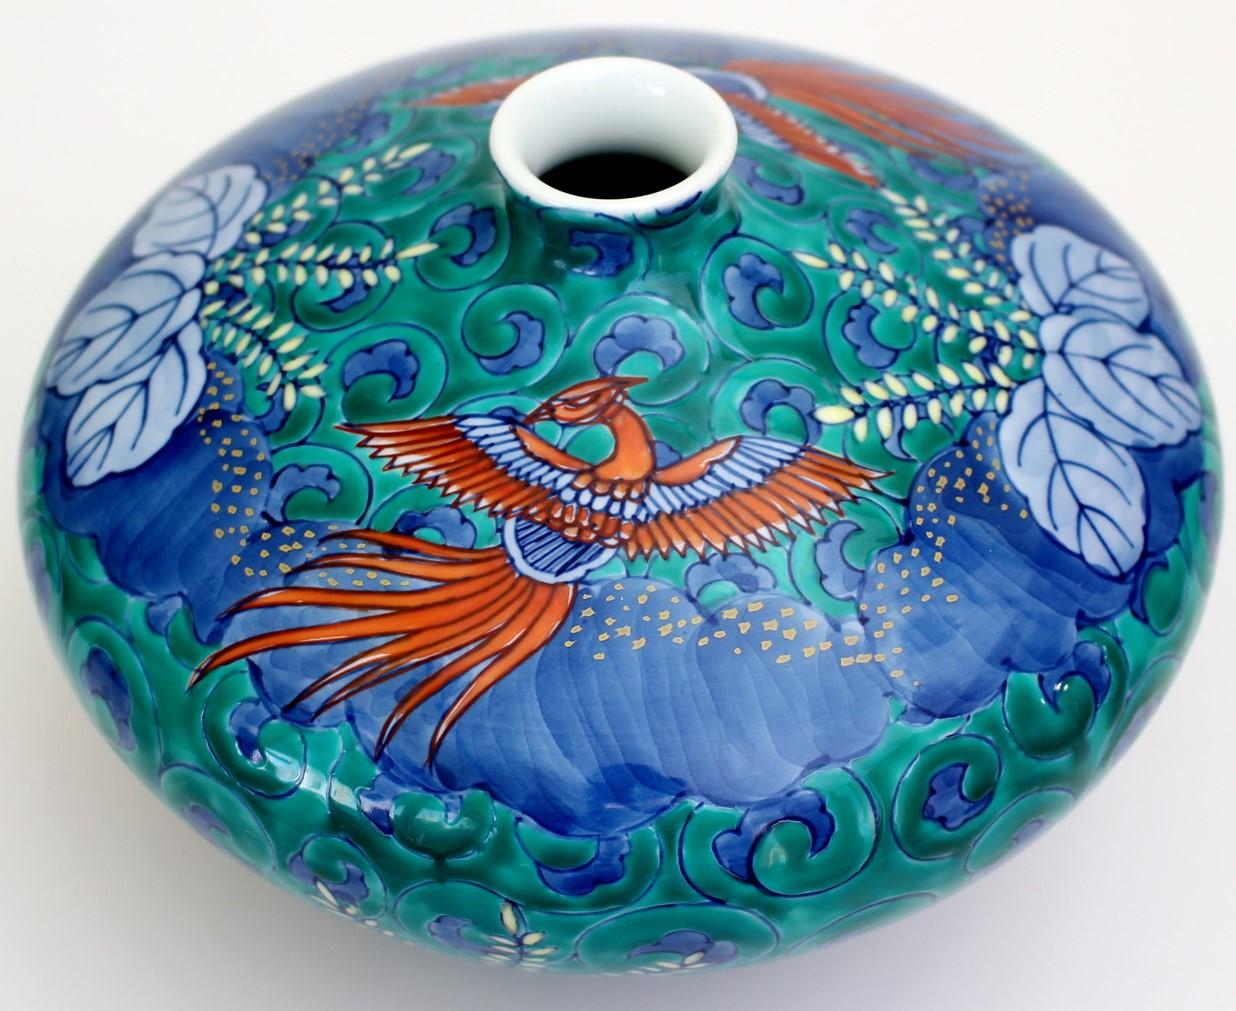 Zeitgenössische dekorative japanische Porzellanvase, handbemalt in Grün, Rot und Blau, mit Phönixen in lebhaftem Rot und Blau, vor einem geliebten würfelförmigen Porzellankörper mit einem auffälligen 